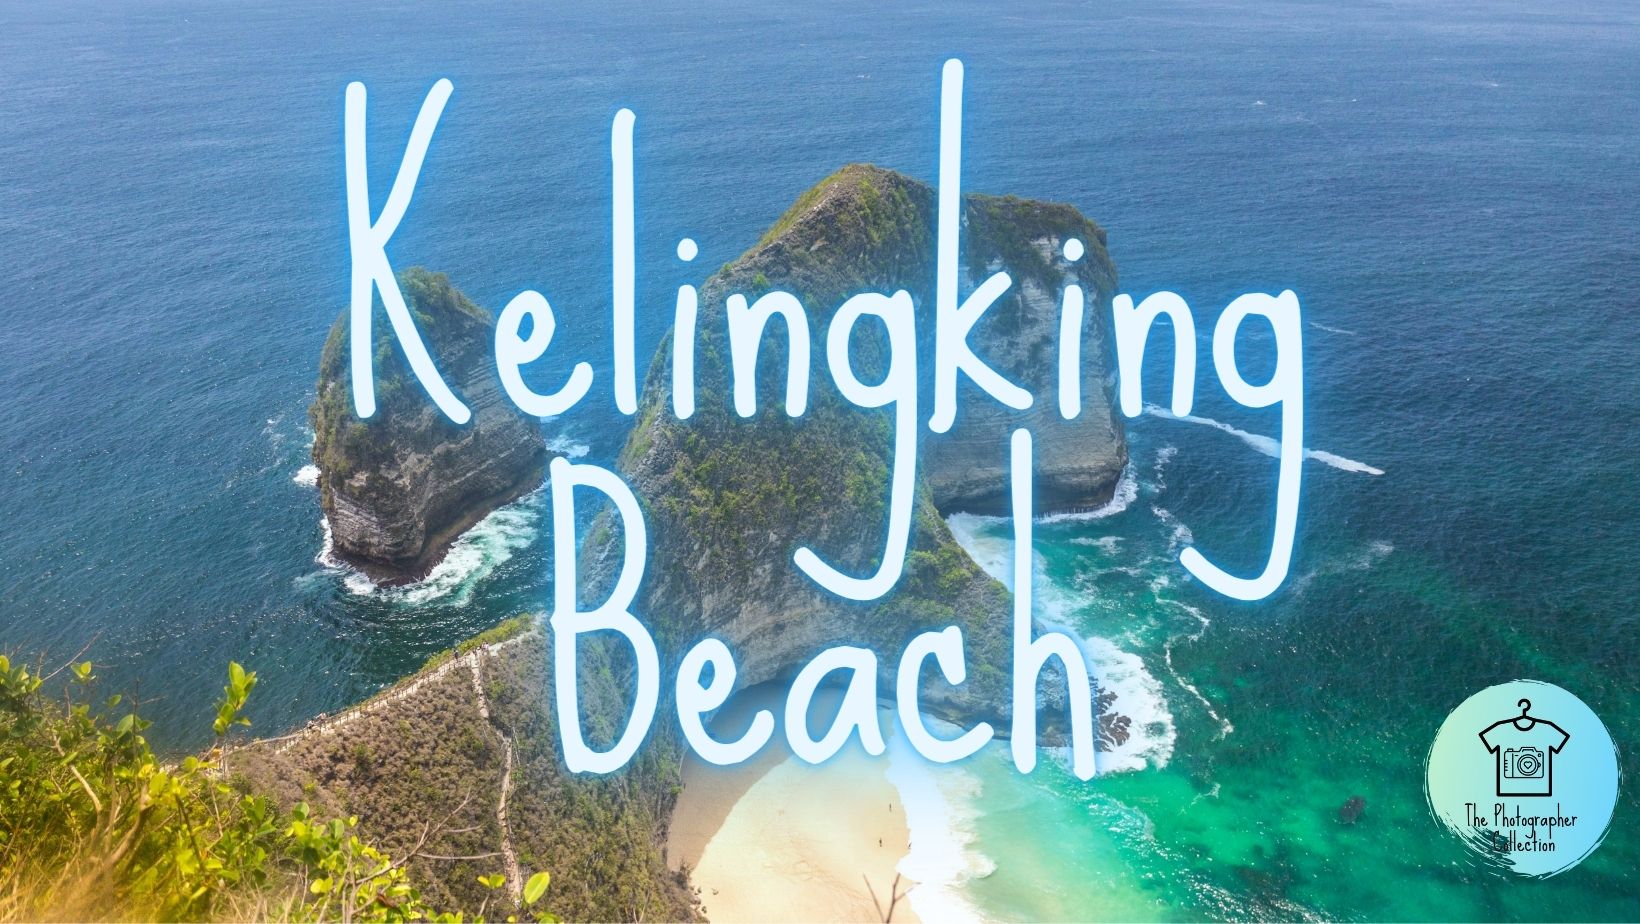 Kelingking Beach